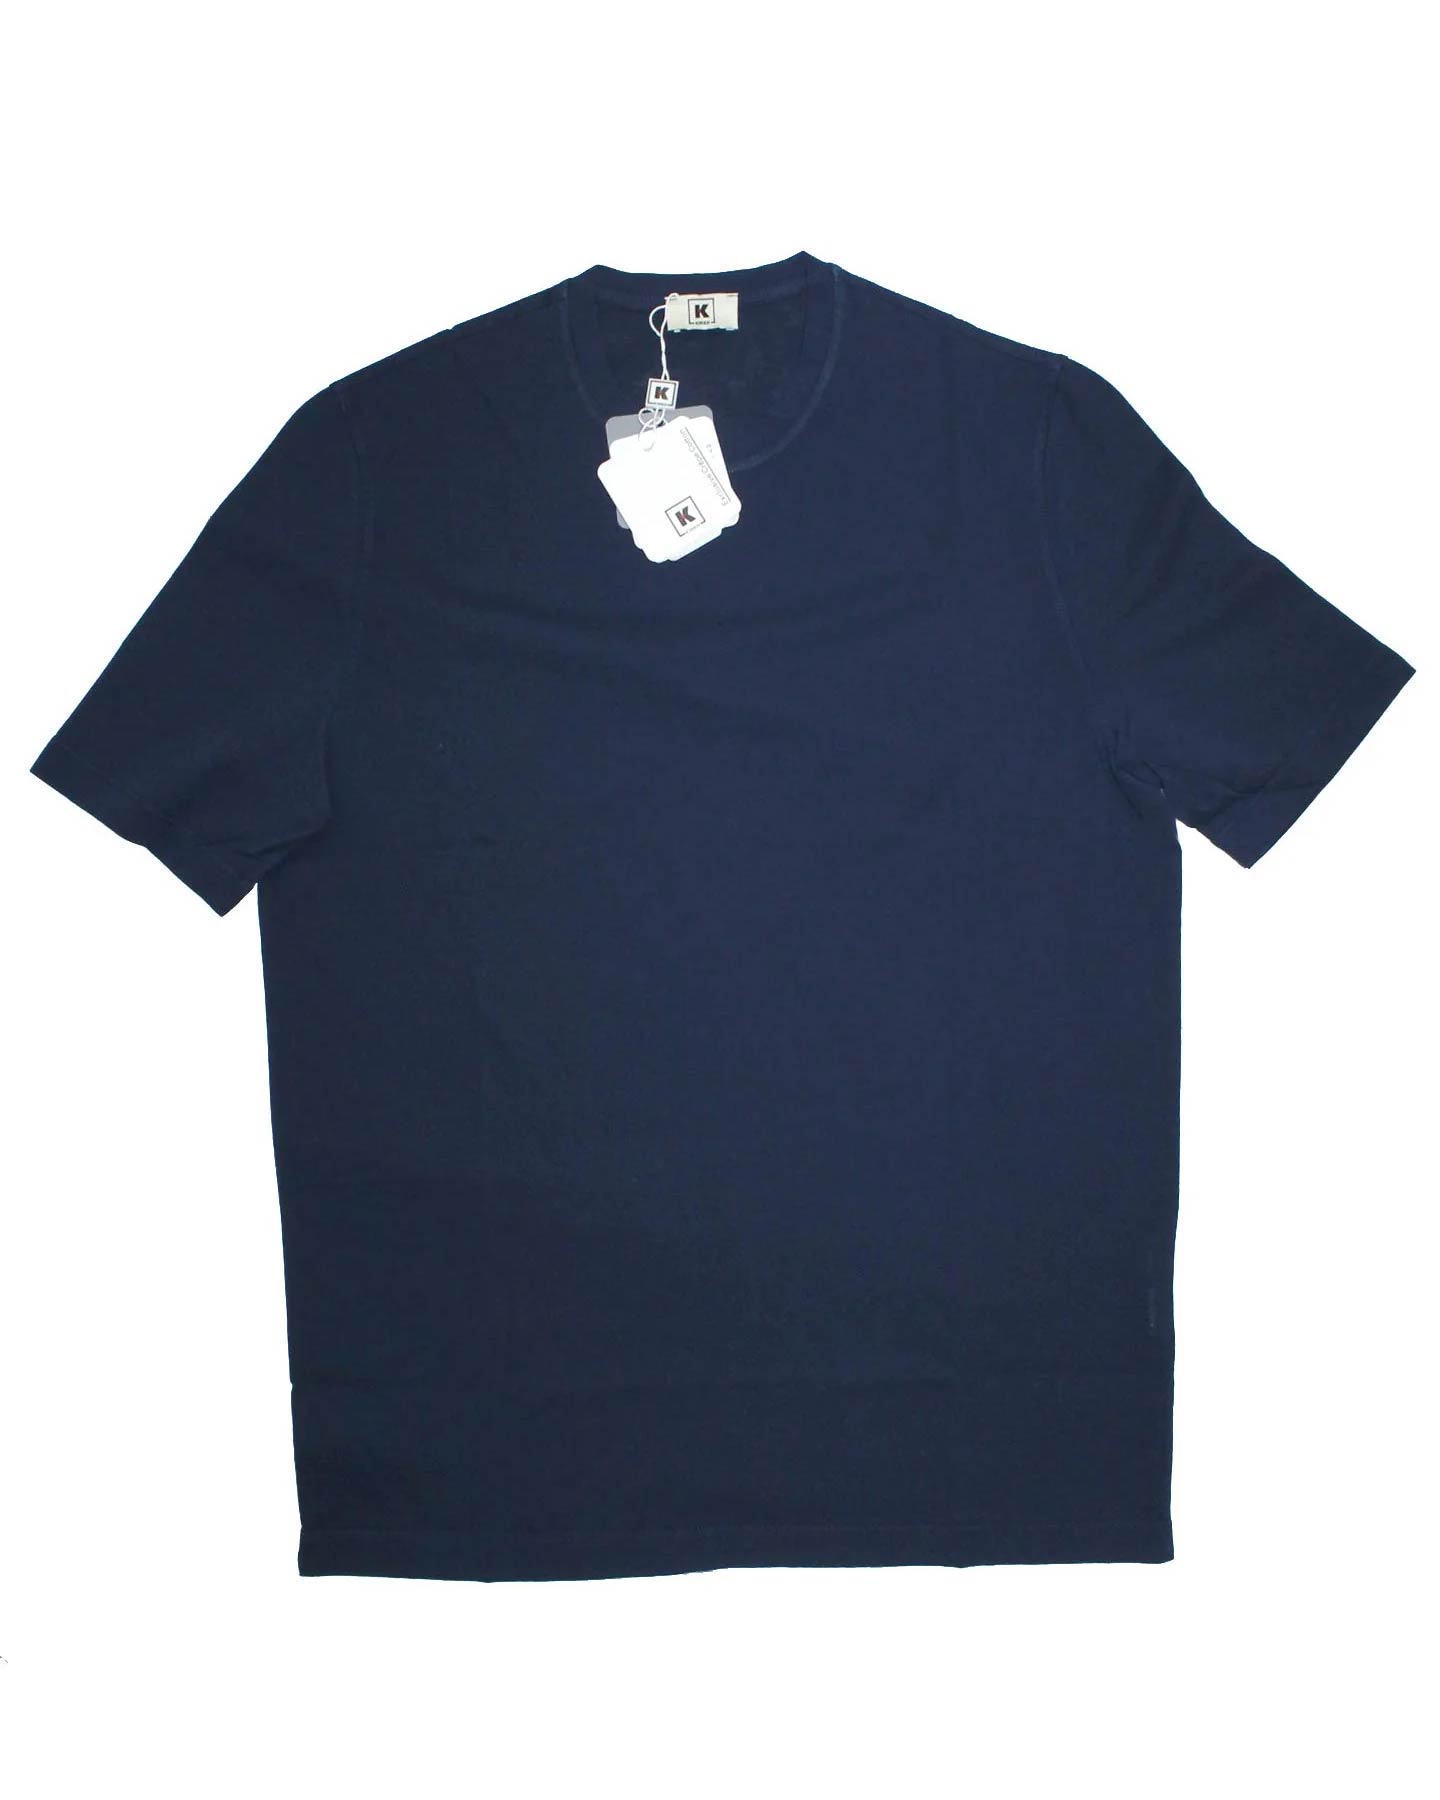 Kired Kiton T-Shirt Navy Crêpe Cotton EU 56/ XXL